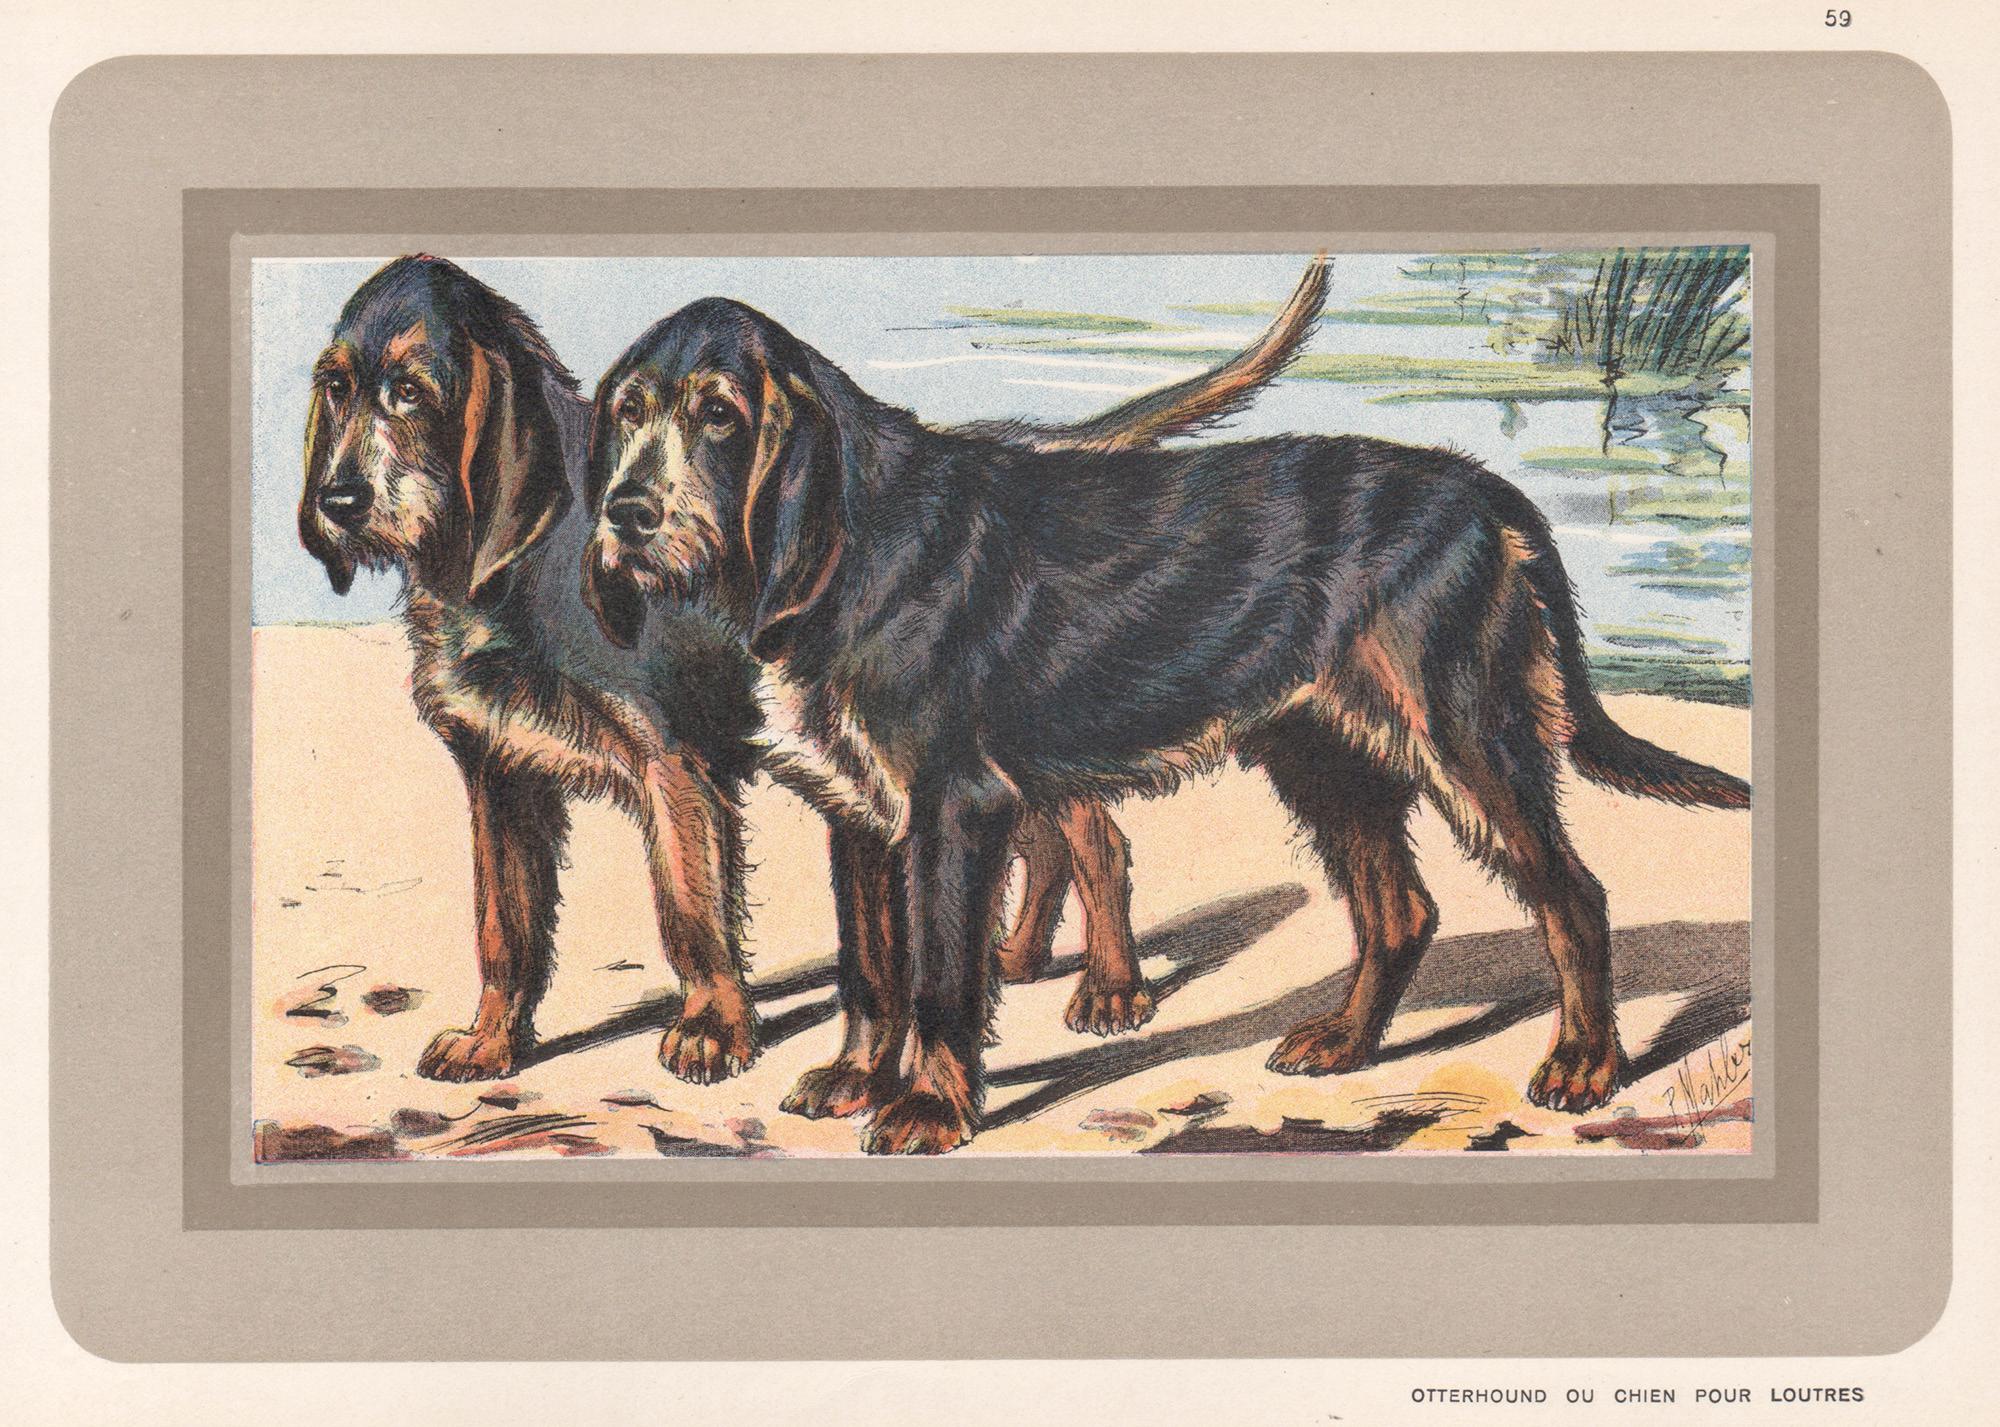 Animal Print P. Mahler - Otterhound Ou Chien Pour Loutres, chien, chromolithographie française, années 1930